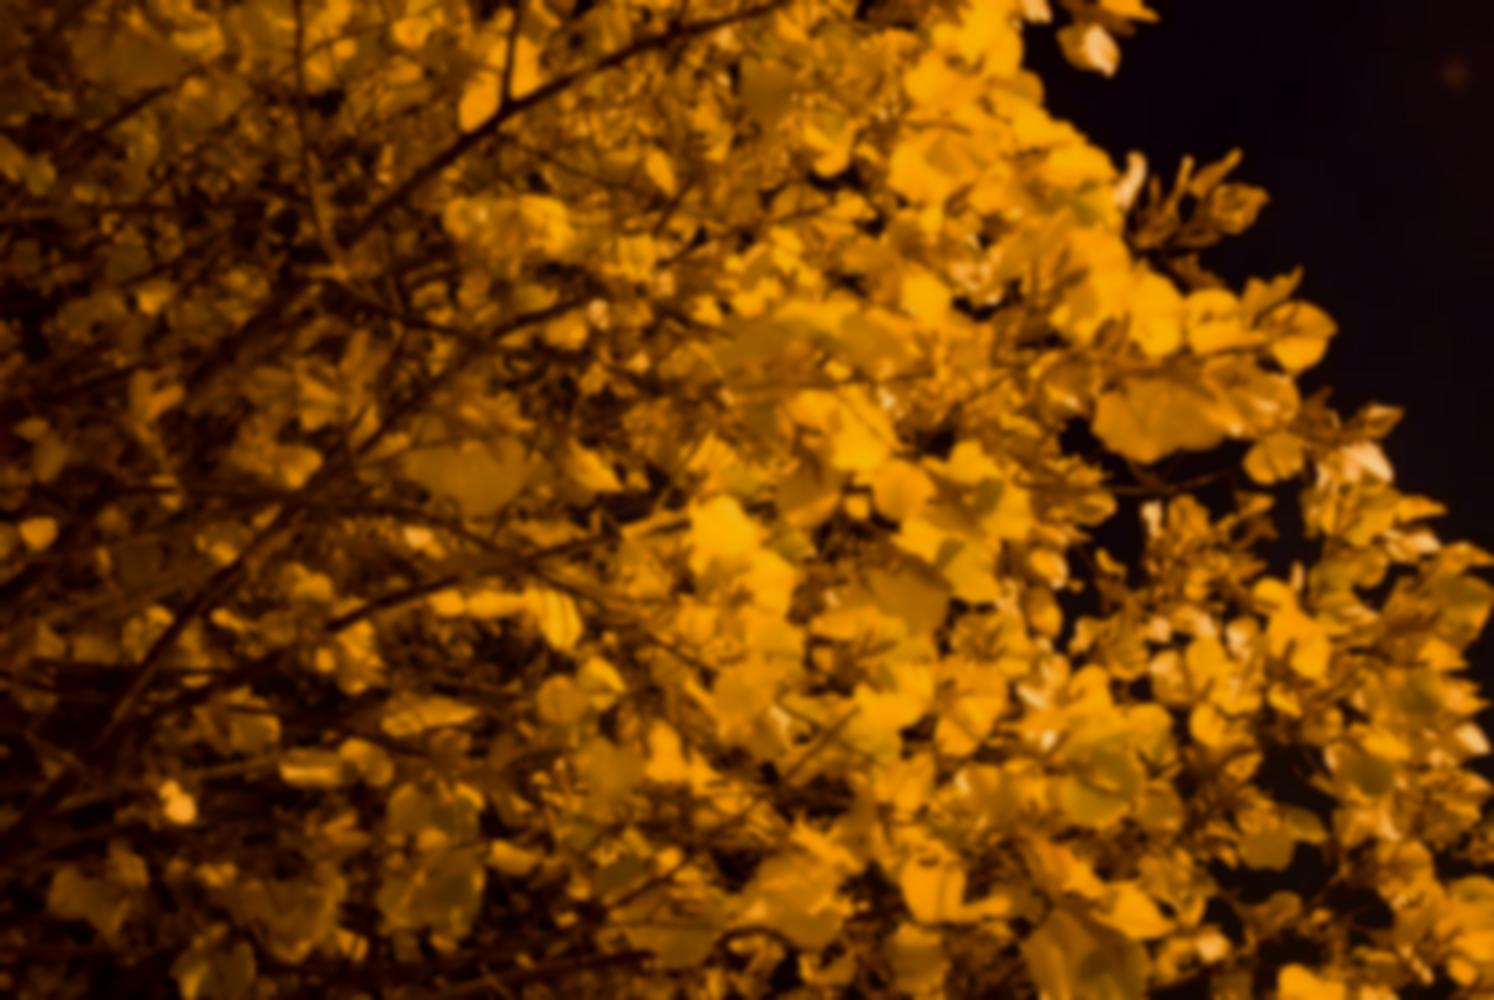 Tilleul dont le jaune des feuilles est avivé par la lumière d'un réverbère. Nanterre, octobre 2009.